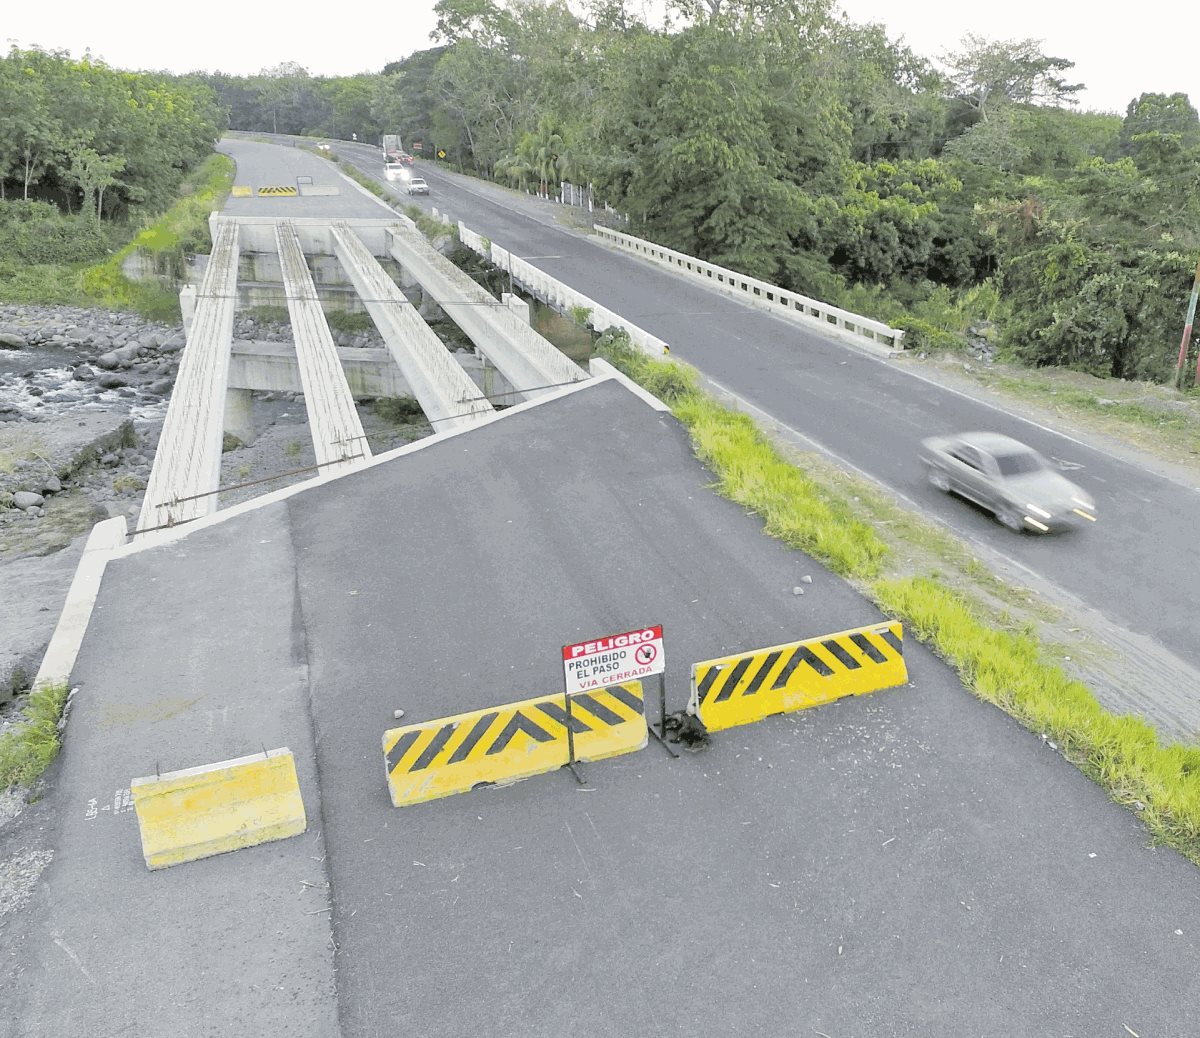 La carretera  de la Costa Sur encargada a la constructora brasileña quedó inconclusa debido a los hallazgos de modificaciones en el costo de la obra. (Foto Prensa Libre: Hemeroteca PL)